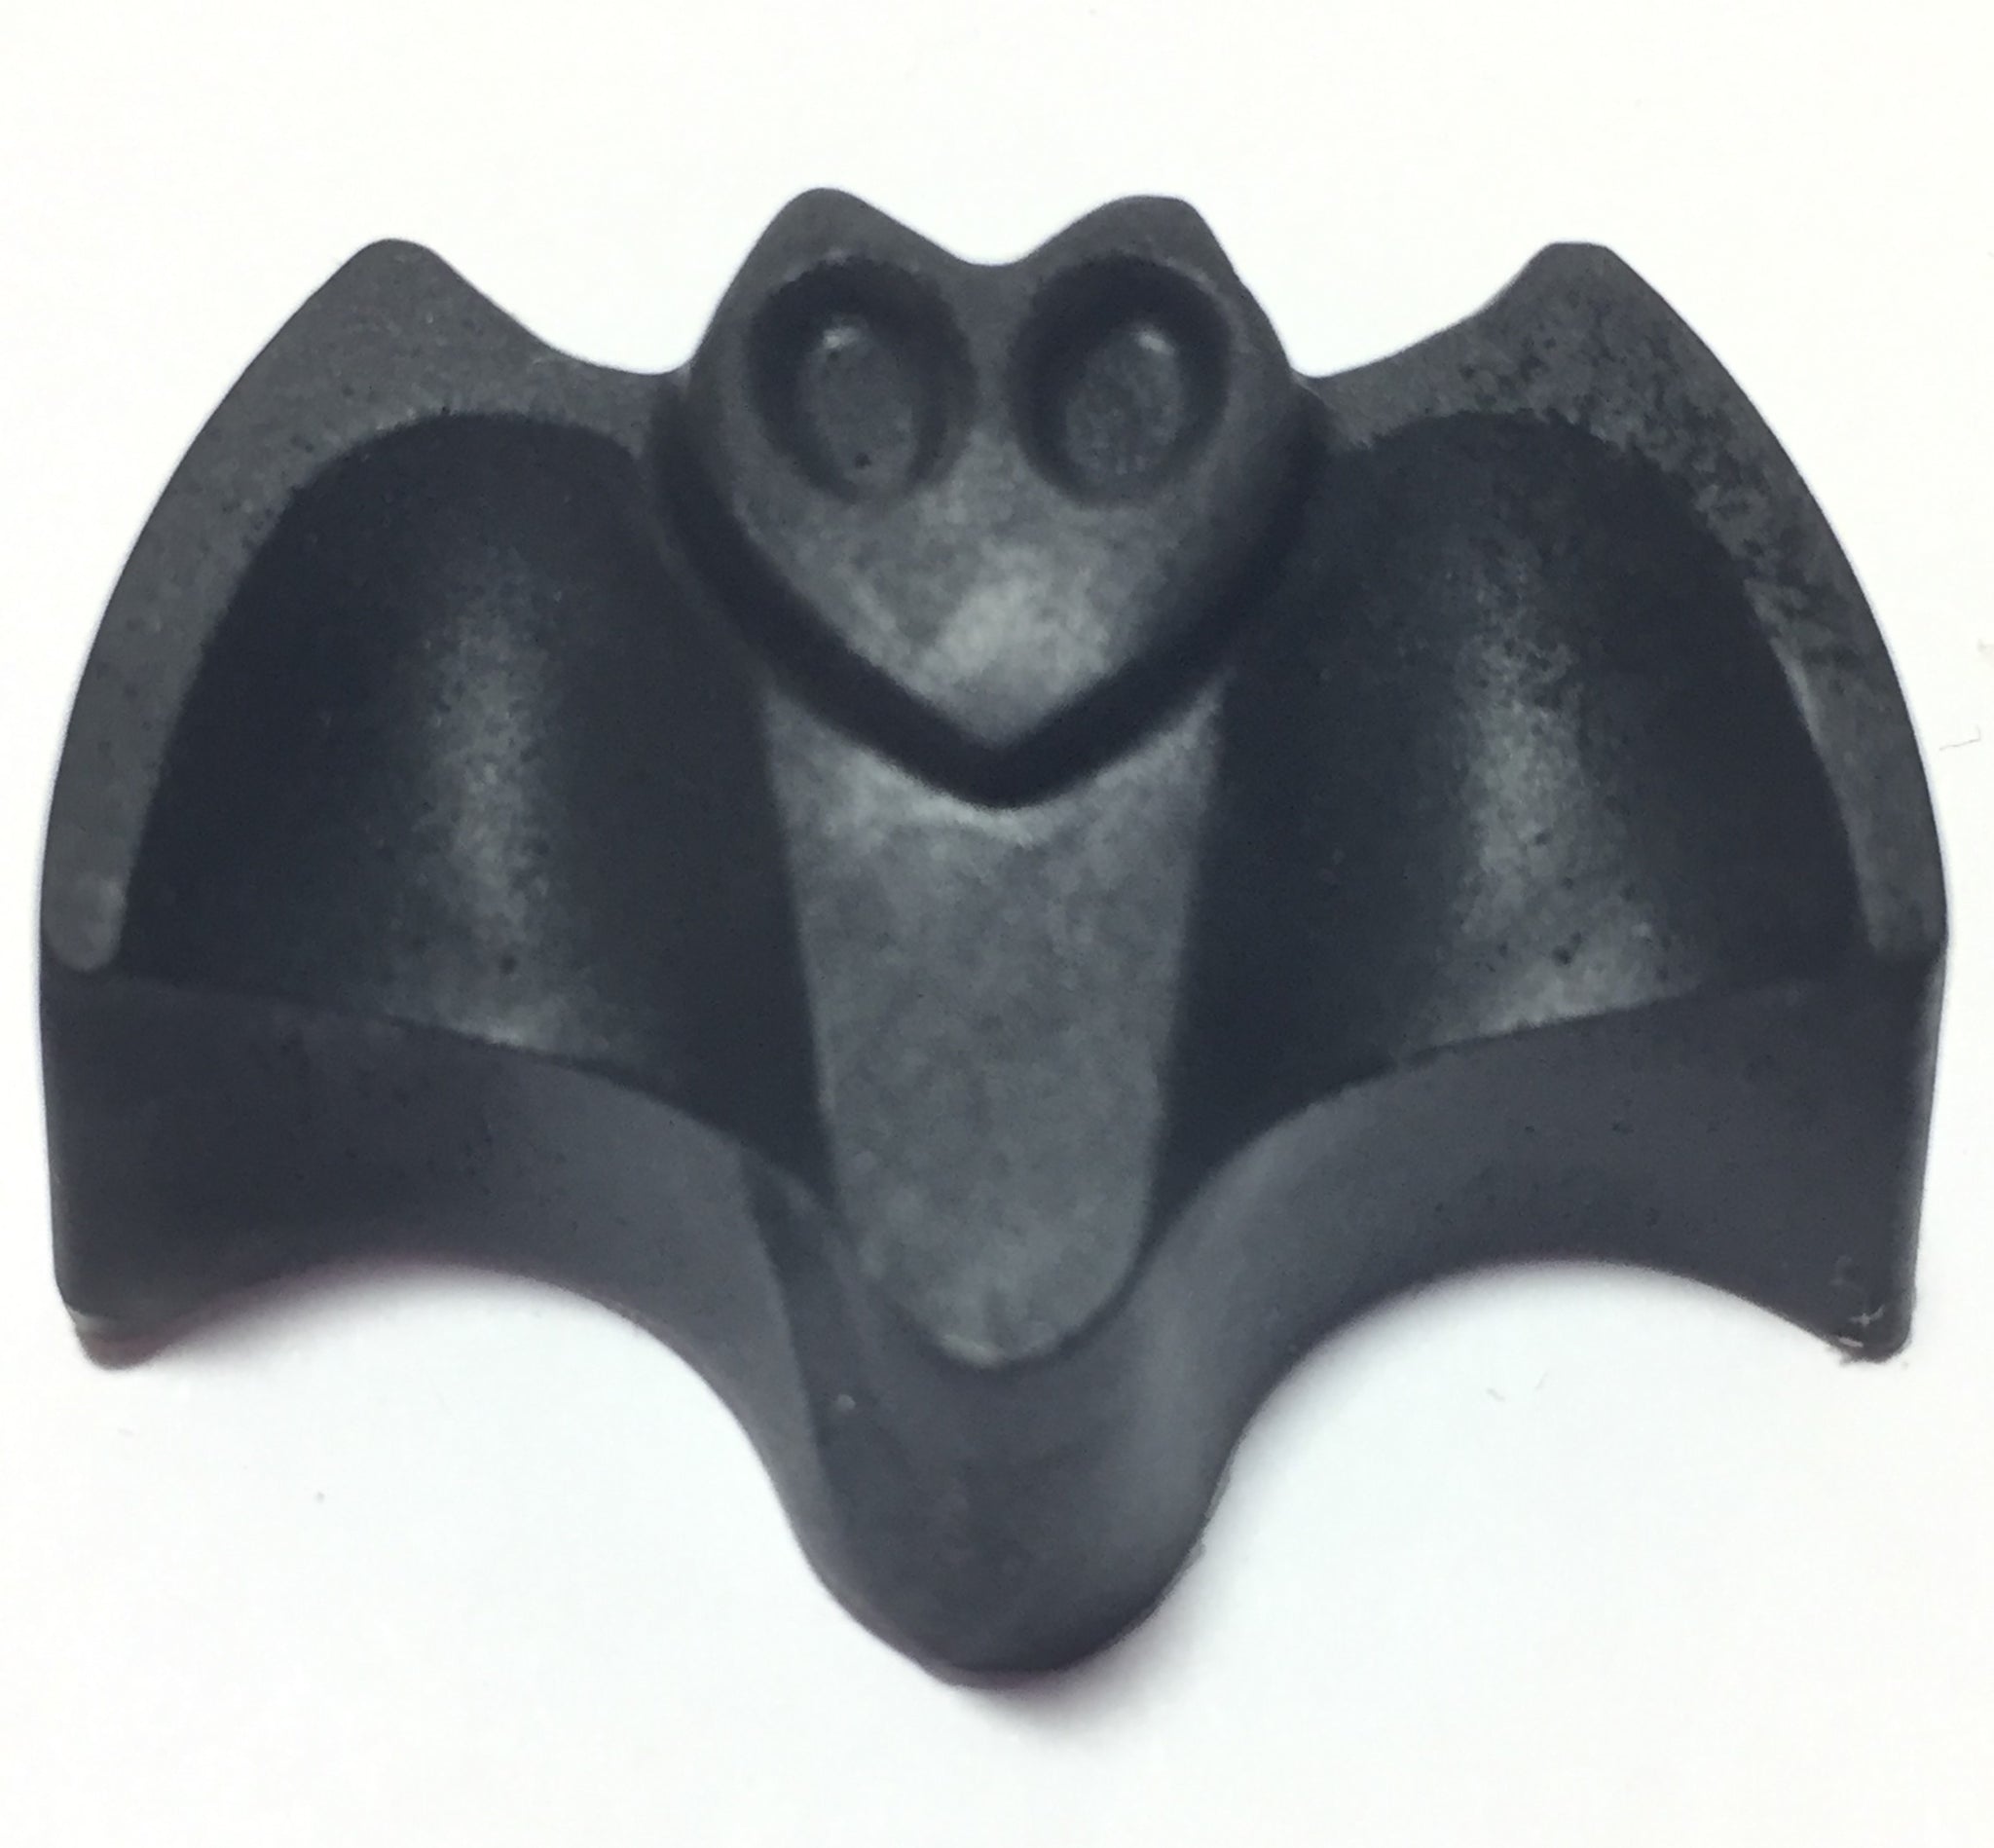 Contempo Bat Soap Embeds